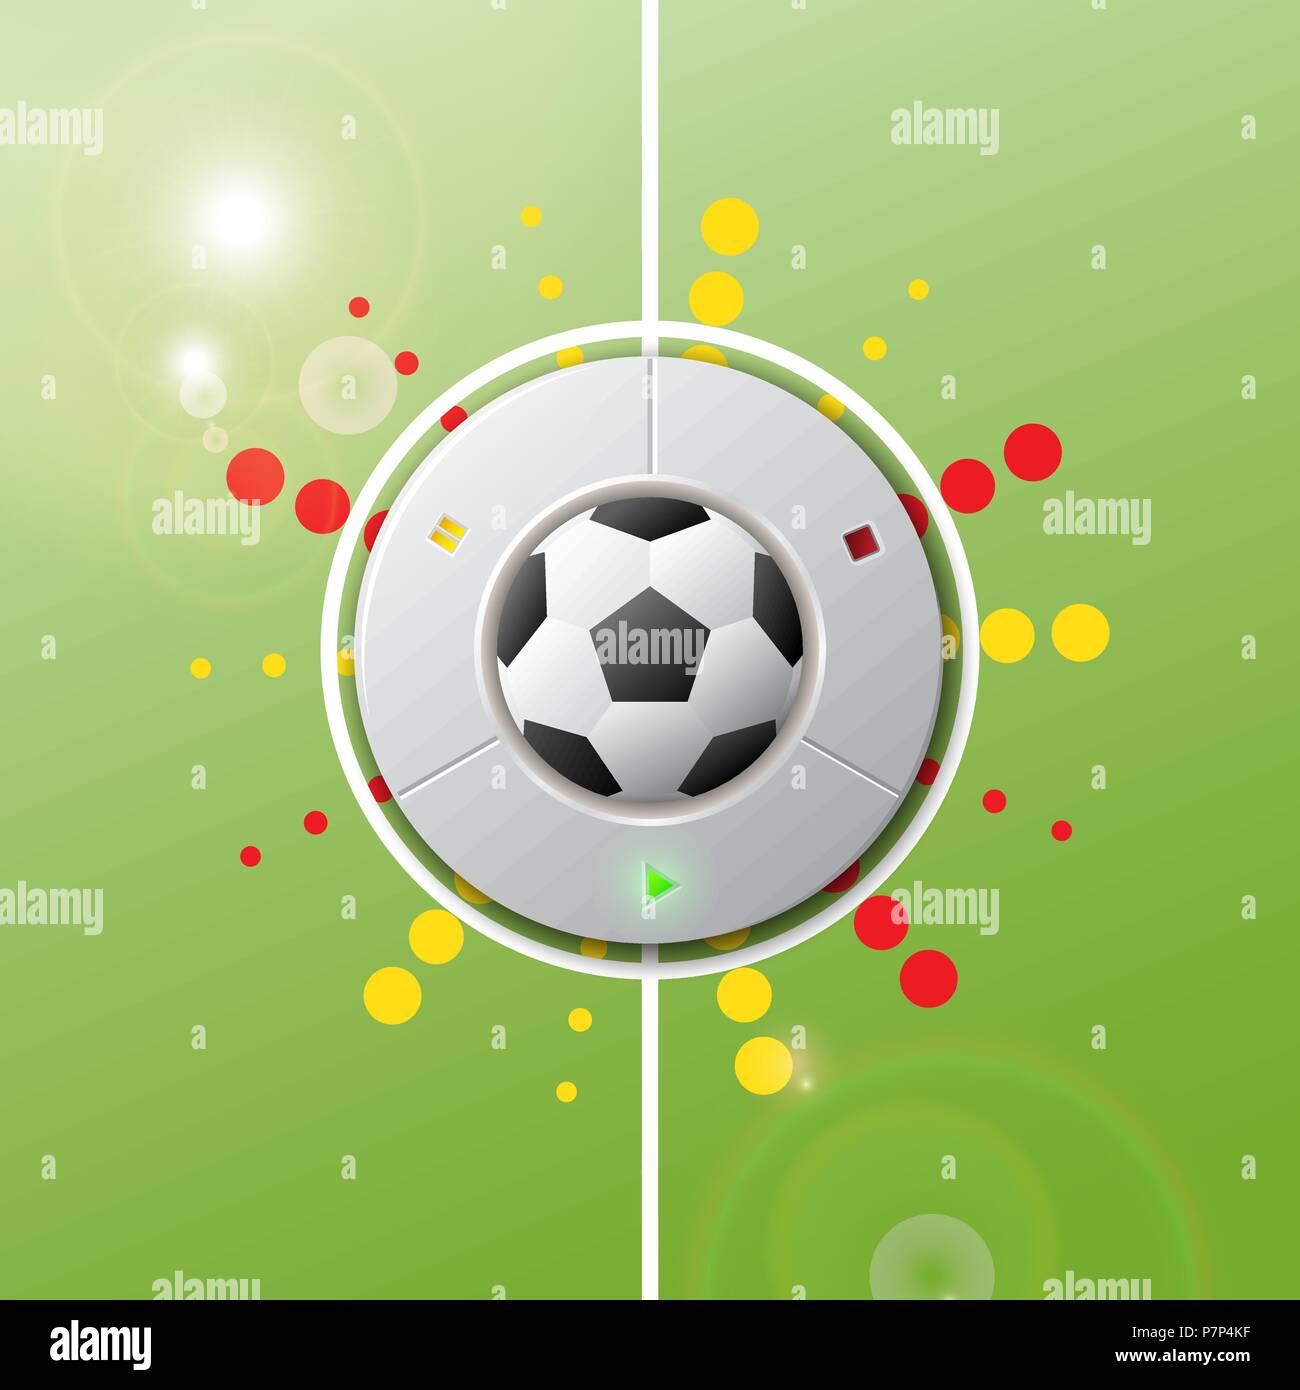 Realistische Fußball" Spiel auf der grünen Wiese zu spielen. Vector Illustration Anzeichen für die Fußball-Weltmeisterschaft, Spiele. Stock Vektor